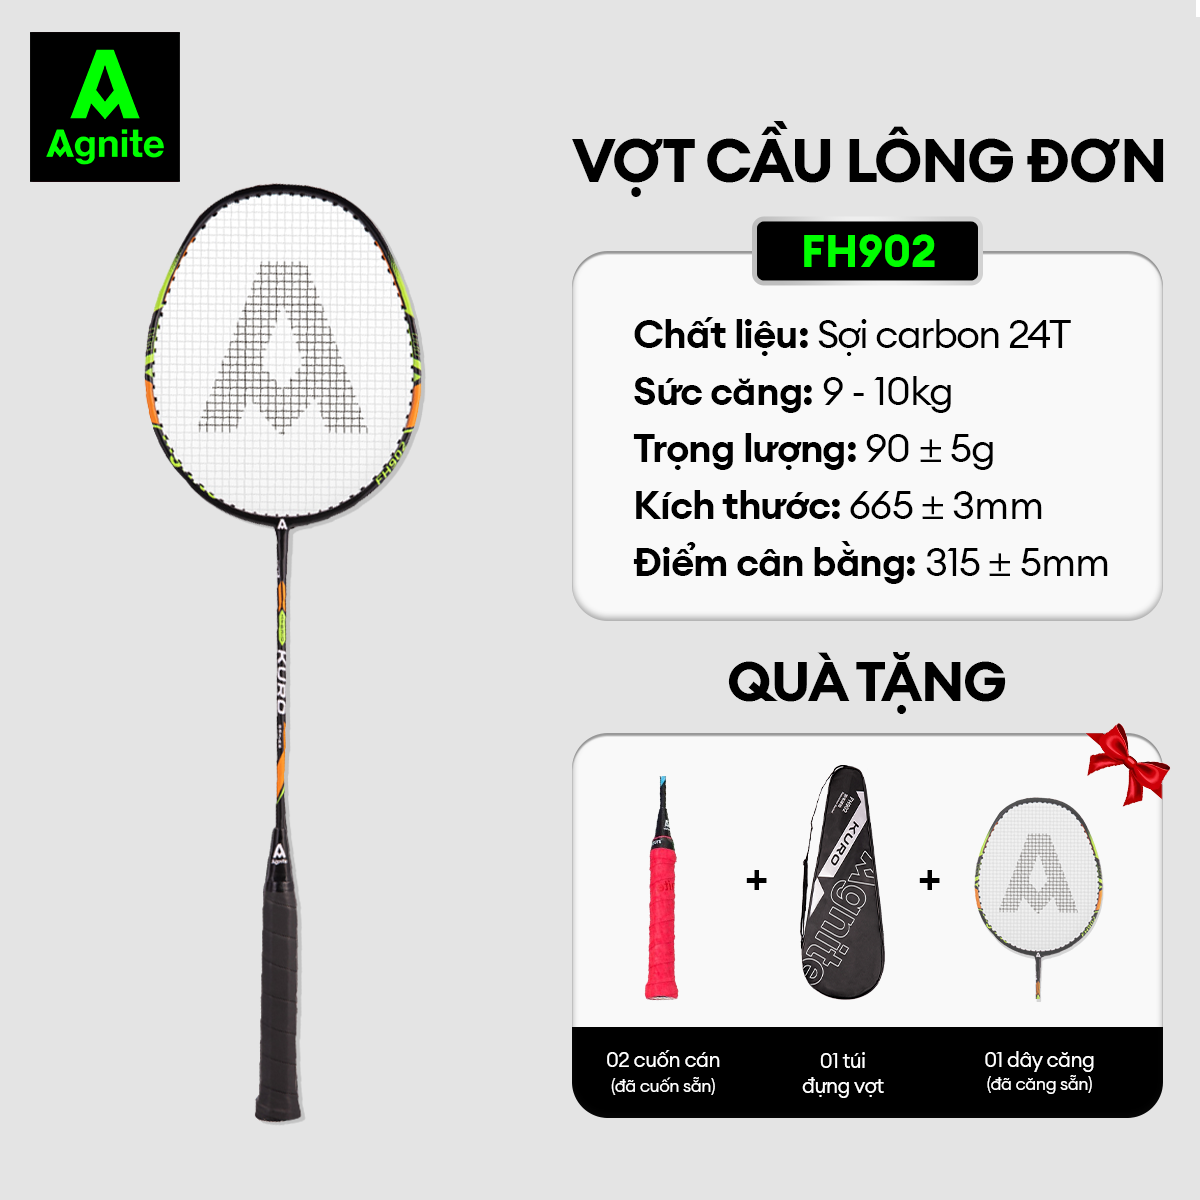 Hình ảnh 1 chiếc vợt đơn thiết kế mới, bền, đẹp, siêu nhẹ chính hãng Agnite tặng kèm túi đựng vợt - FH902